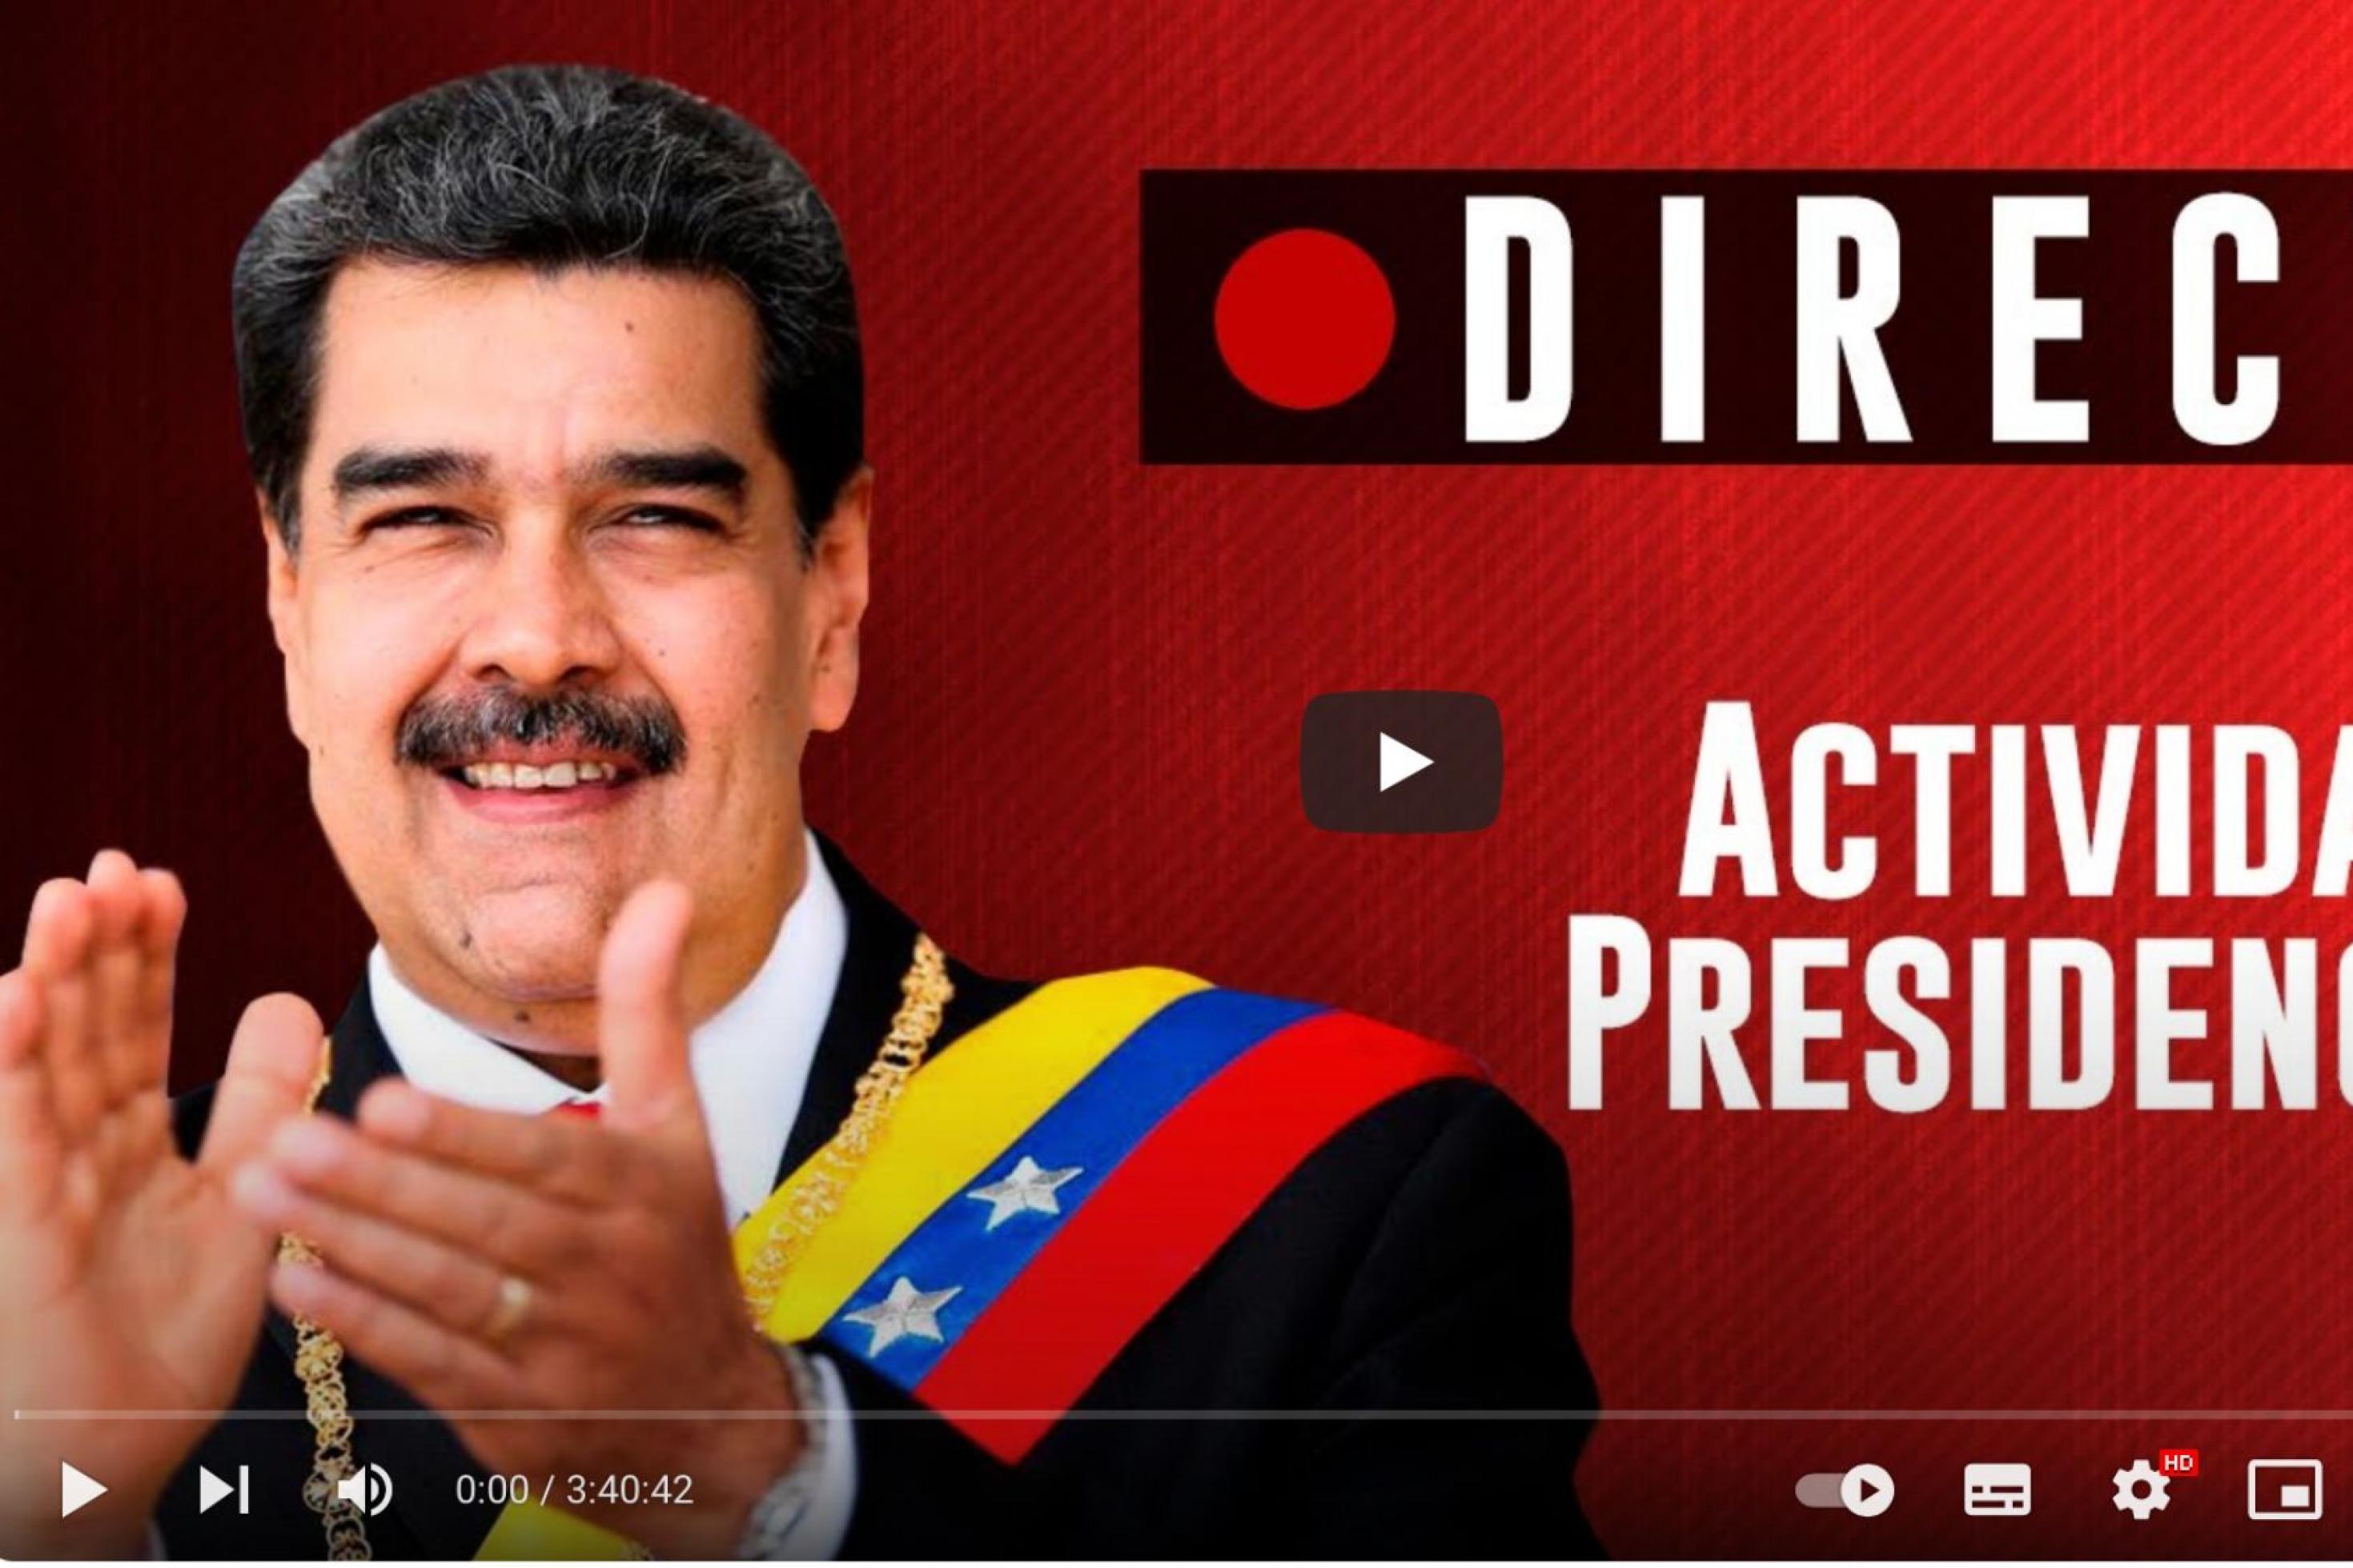 Im Vorschau-Brustbild klatscht er das Publikum an. Er hat eine Schärpe mit der venezolanischen Fahne und Amtskette umgehängt. Daneben steht auf Spanisch: „Live“ und „Aktivität des Präsidenten“.